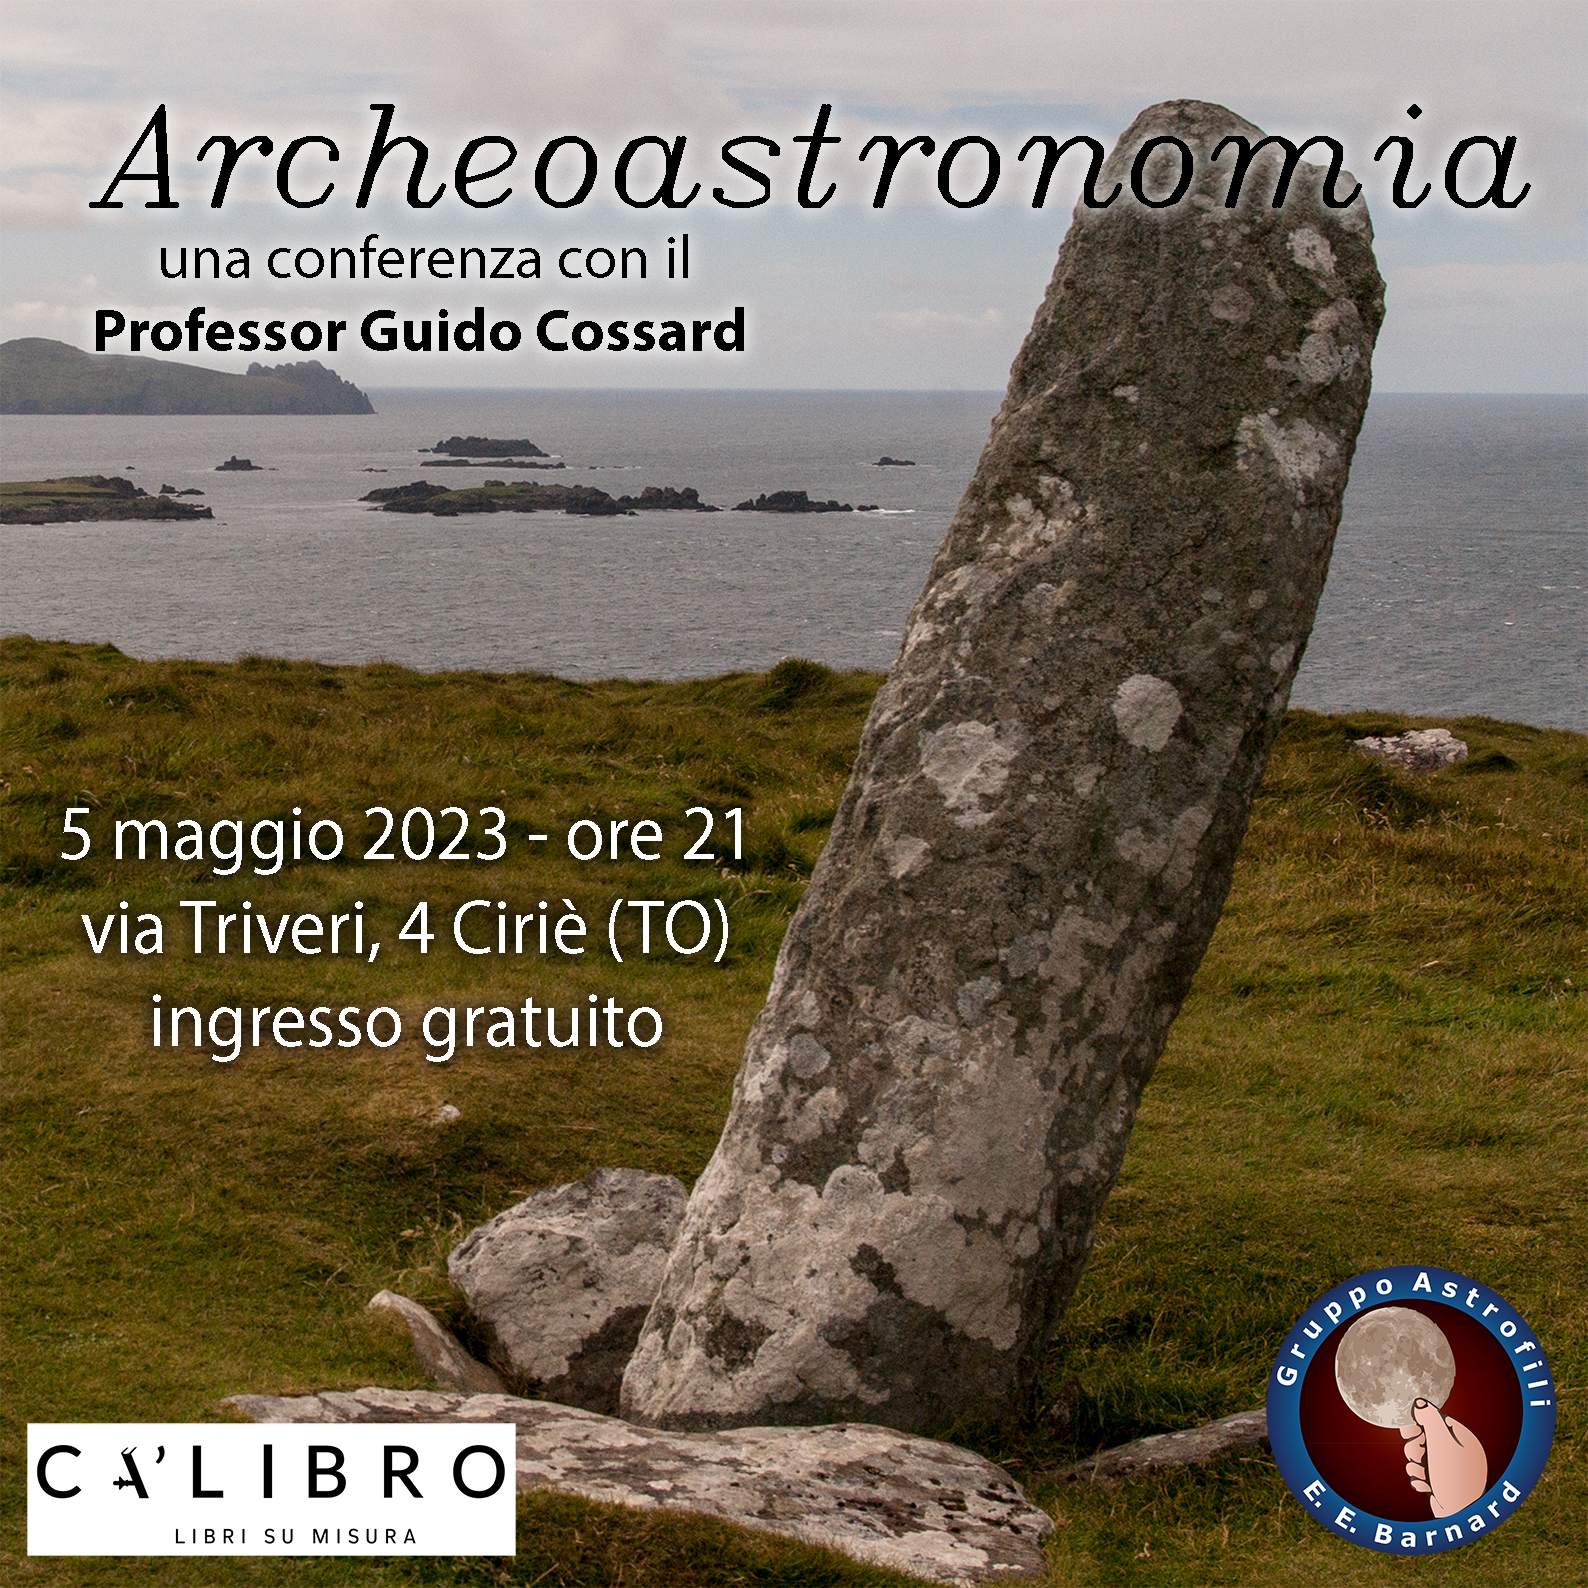 Archeoastronomia con il Professor Guido Cossard